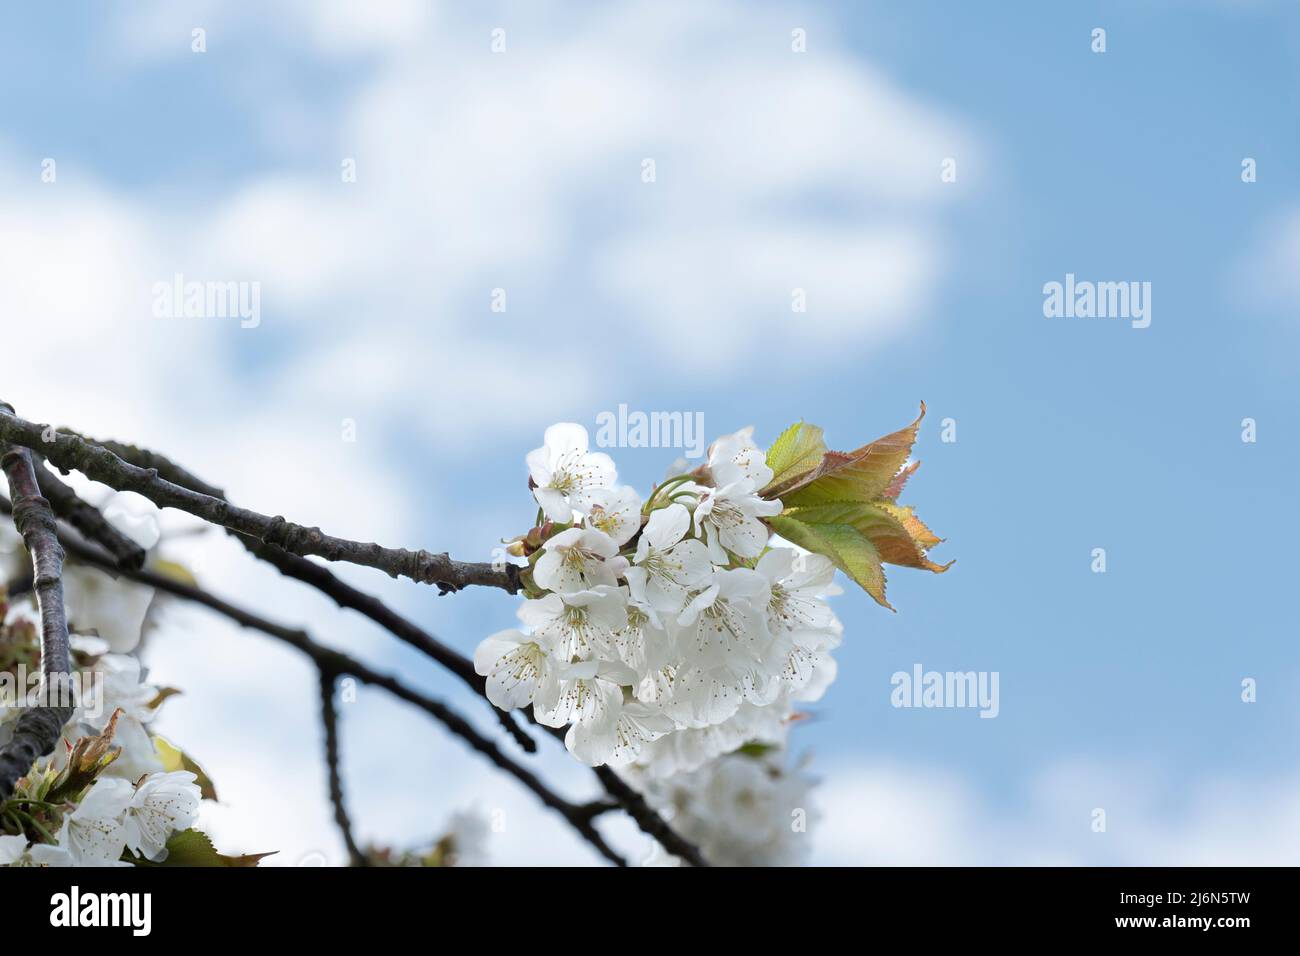 Gros plan d'une branche de cerise blanche en fleurs devant un ciel bleu avec des nuages Banque D'Images